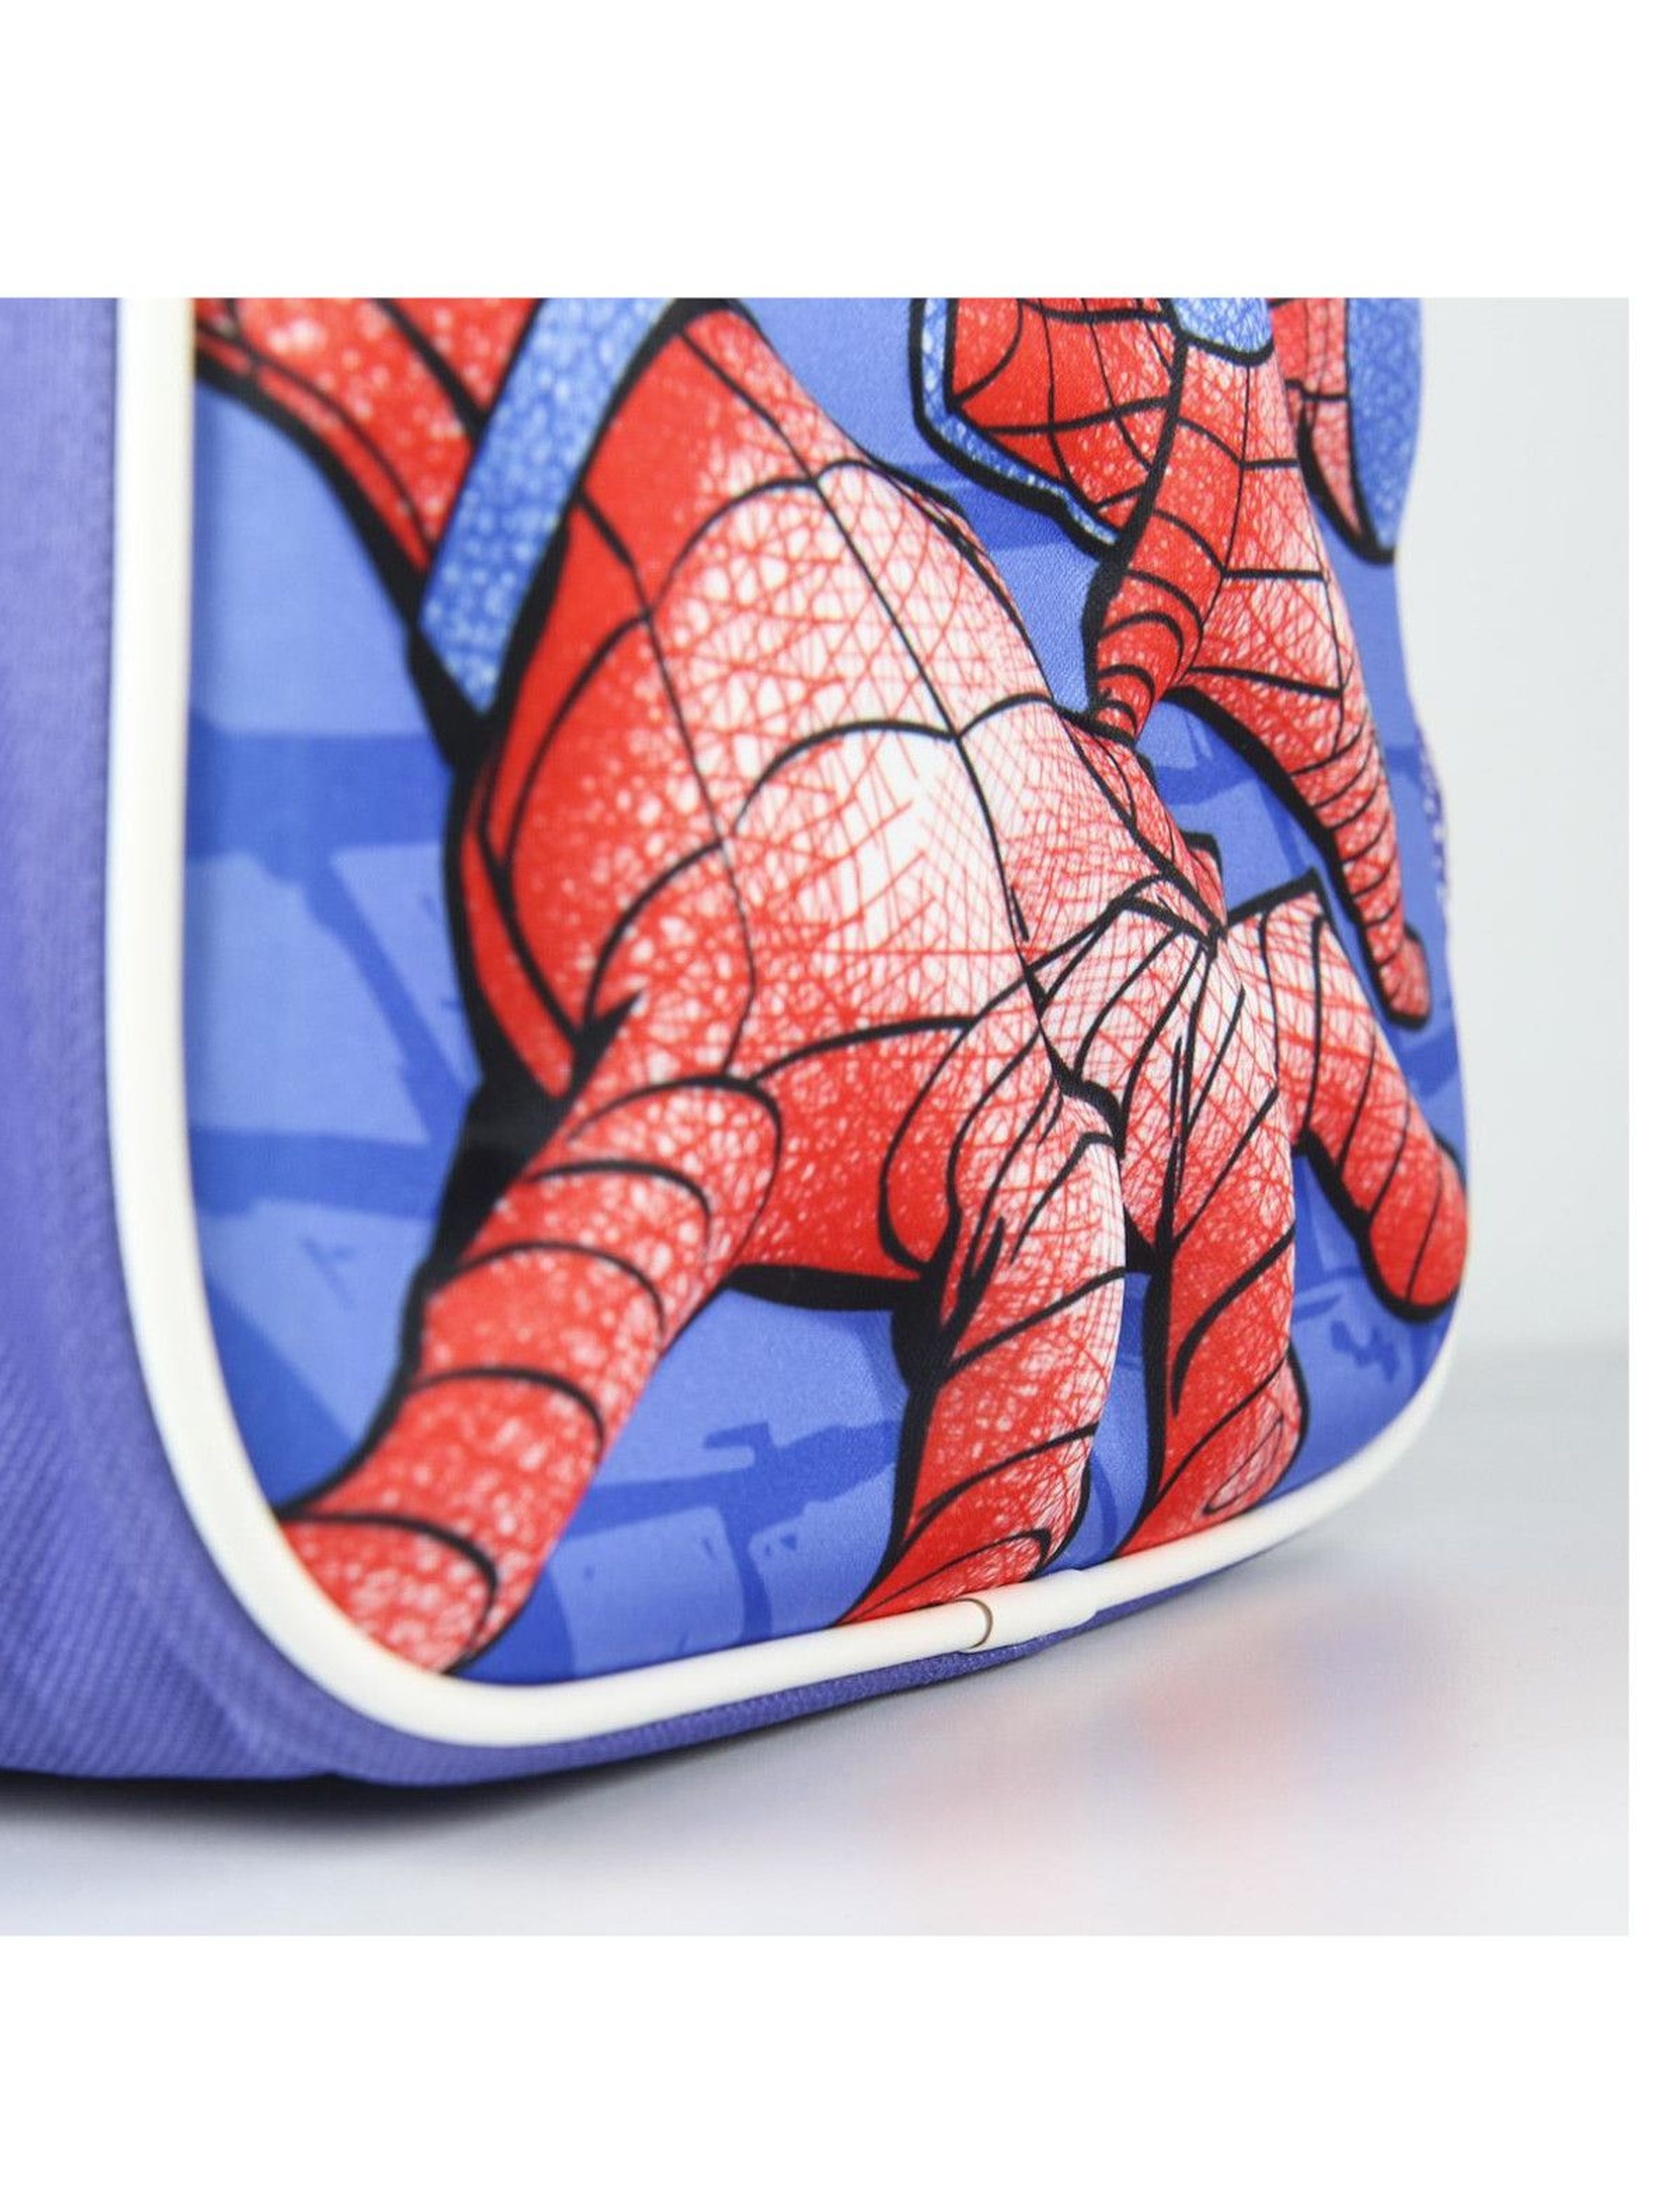 Plecak dla chłopca 3D Spiderman